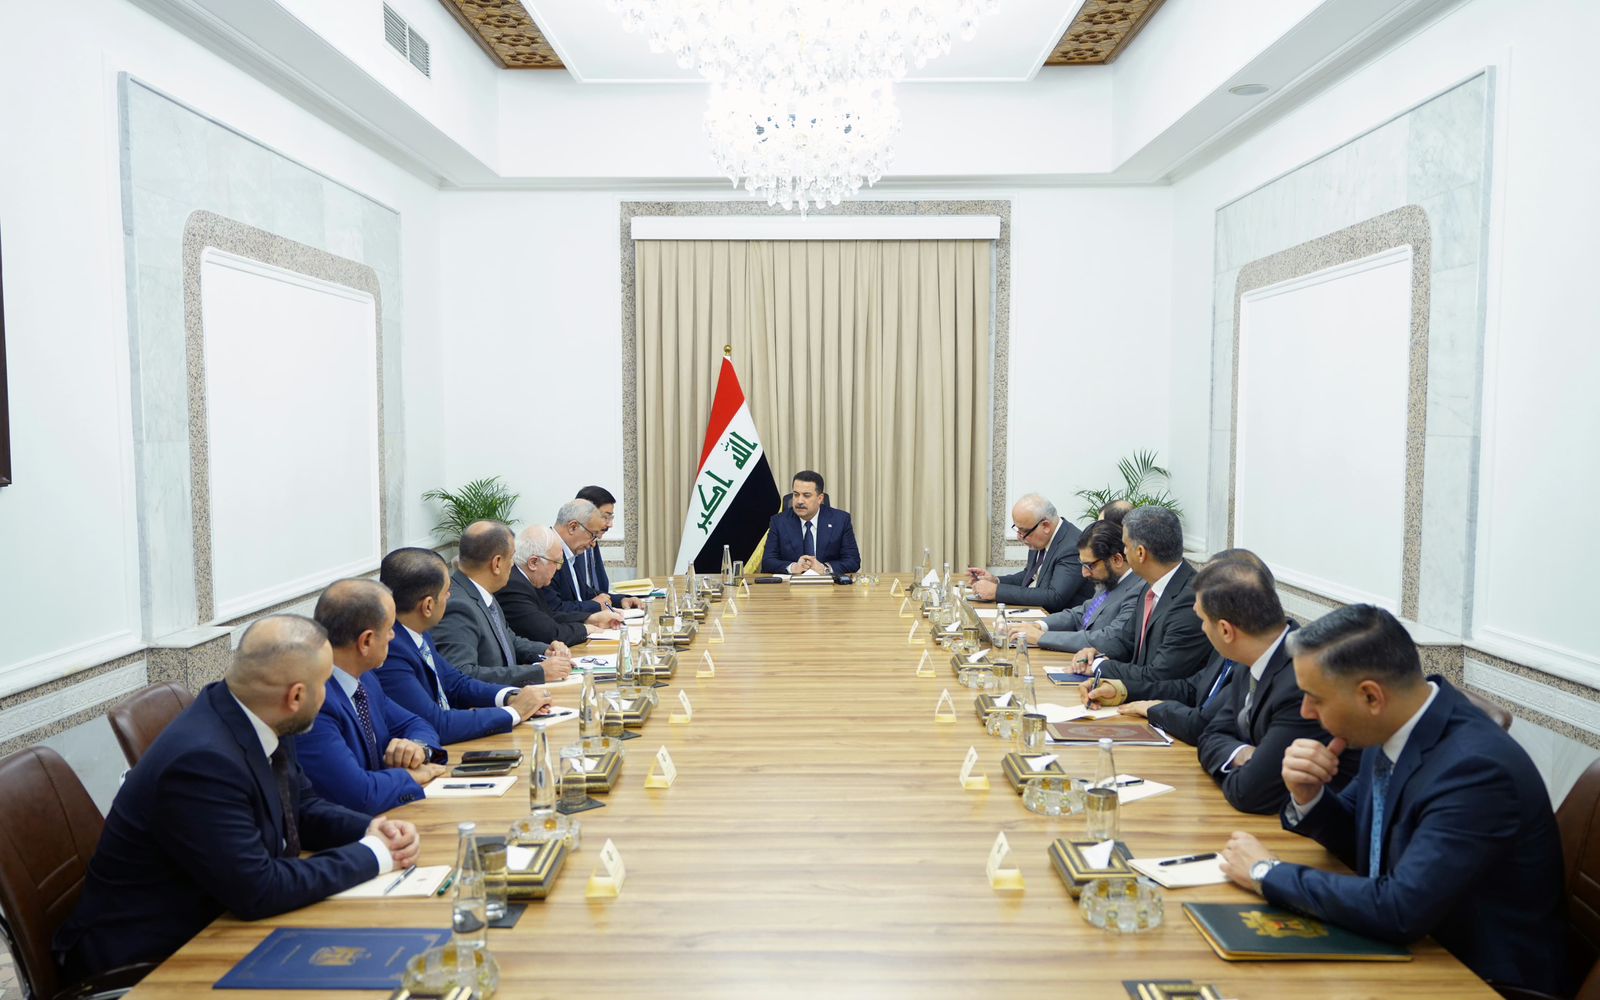 Al-Sudani leads banking reform discussion